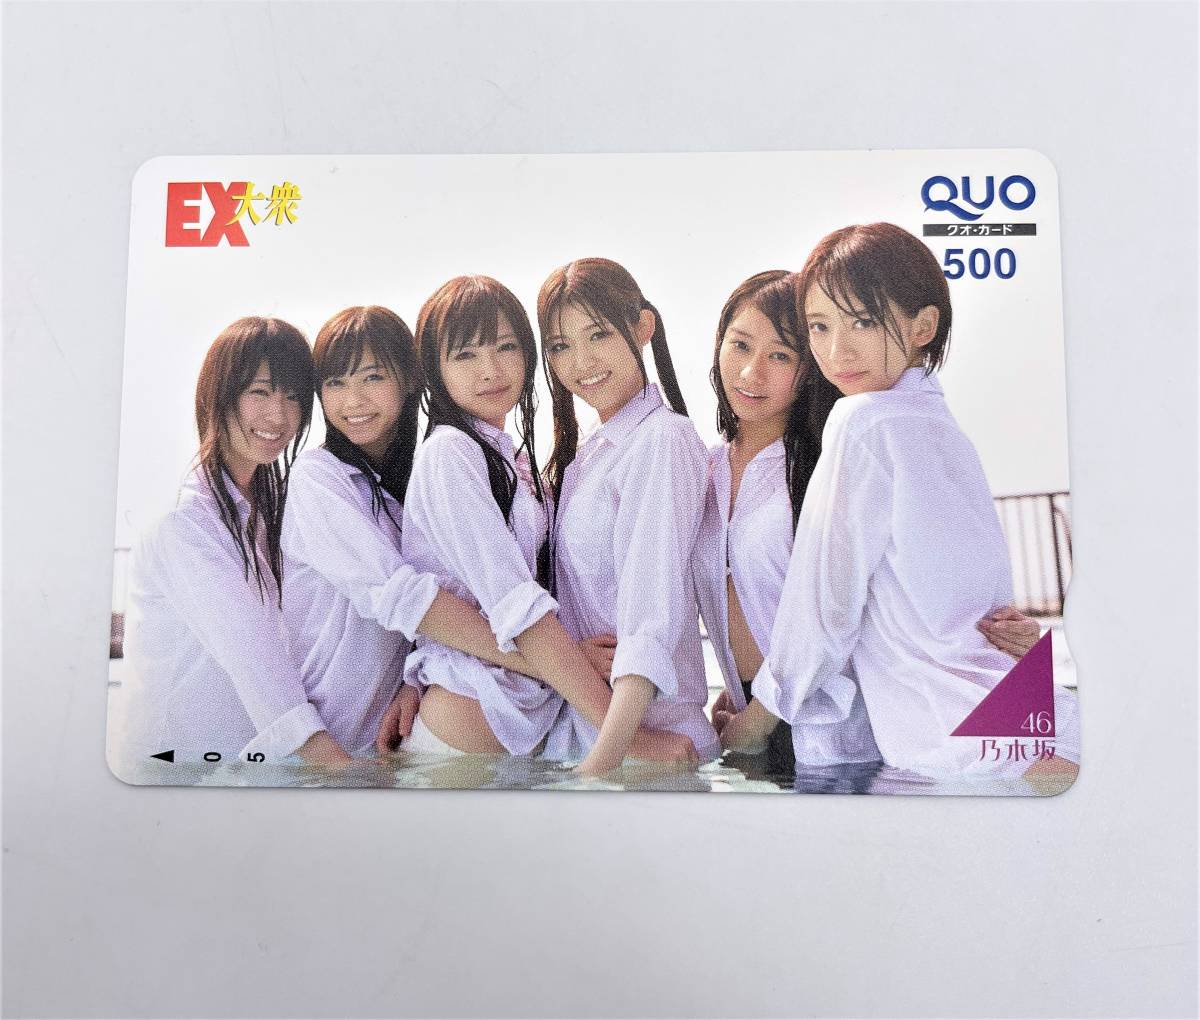  QUO card [ Nogizaka 46 1 листов ] не использовался 500 иен QUO идол модель женщина super EX большой . женщина IS